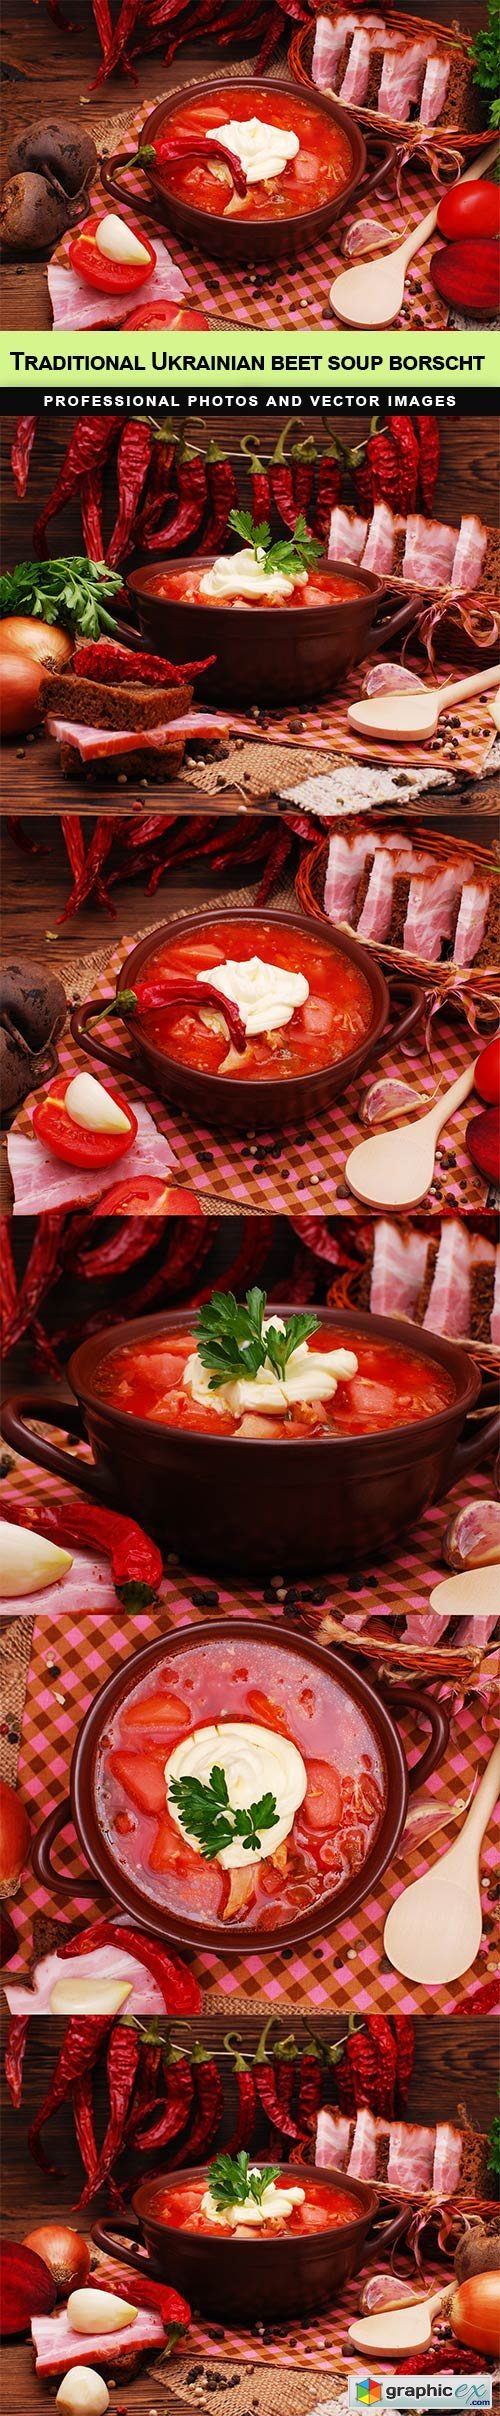 The traditional Ukrainian beet soup borscht